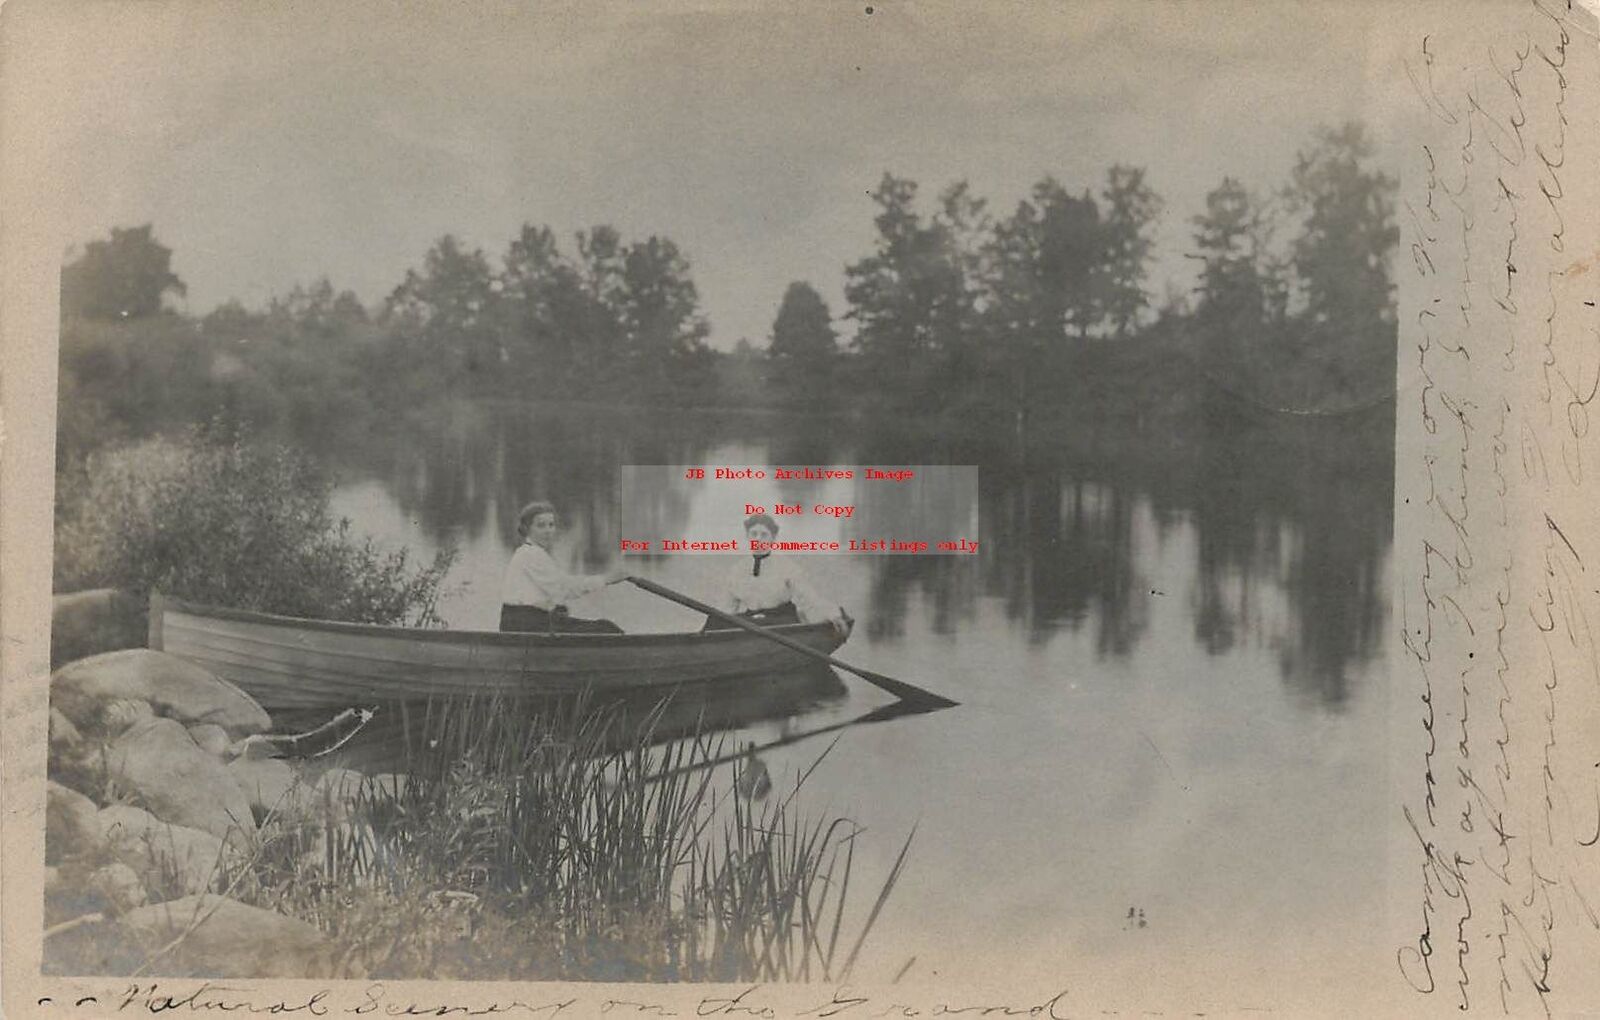 MI, Parma?, Michigan, RPPC, Women In Row Boat, 1906 PM, Photo